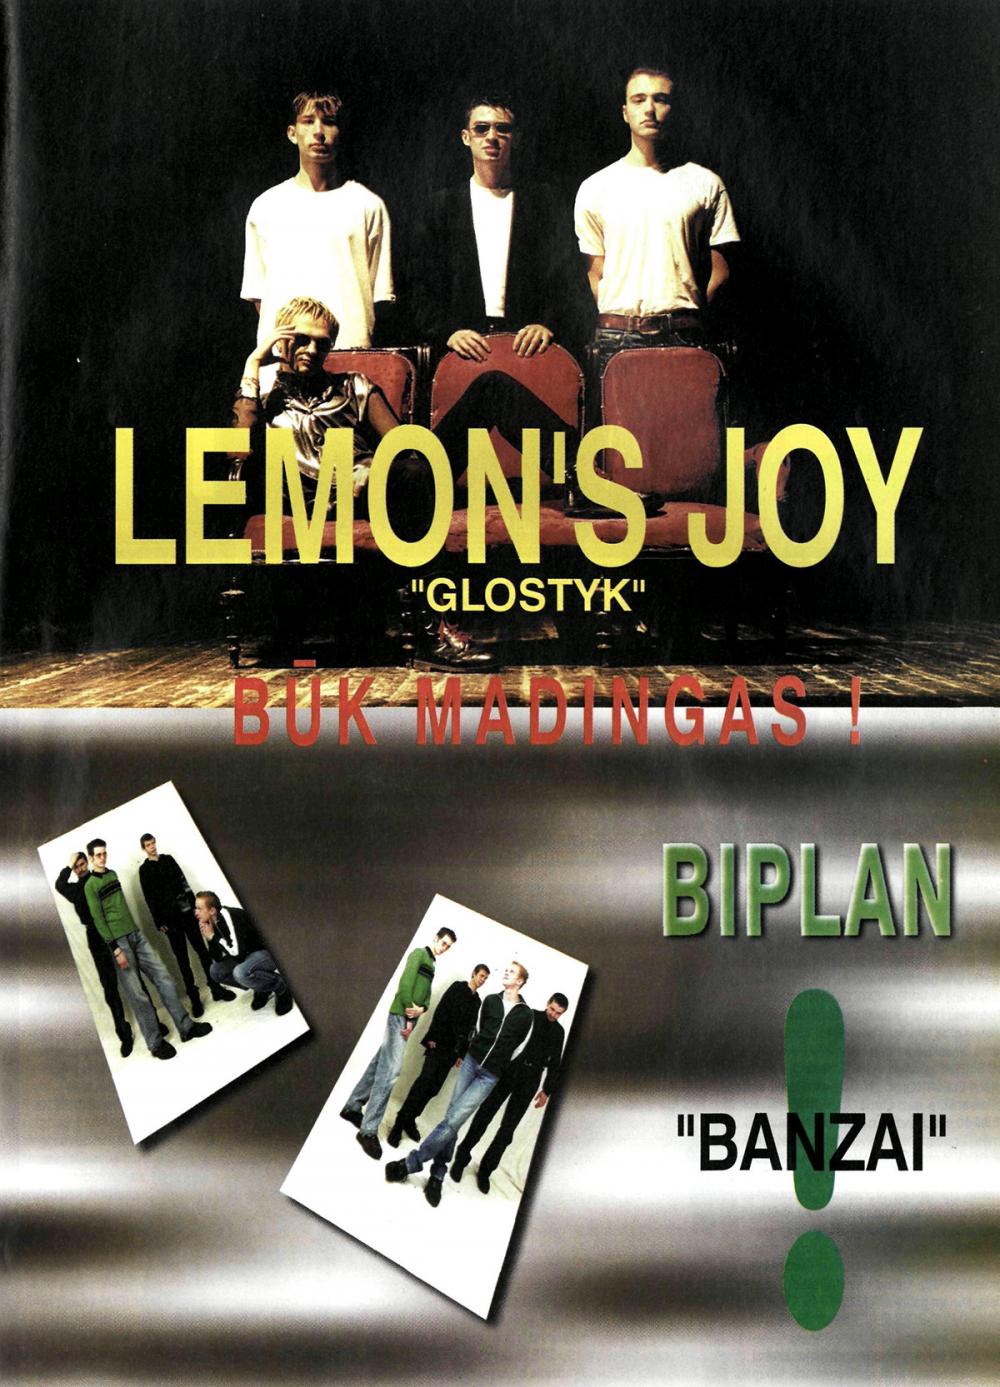 Lemons Joy - „Glostyk“ / Biplan „Banzai“ / BŪK MADINGAS!